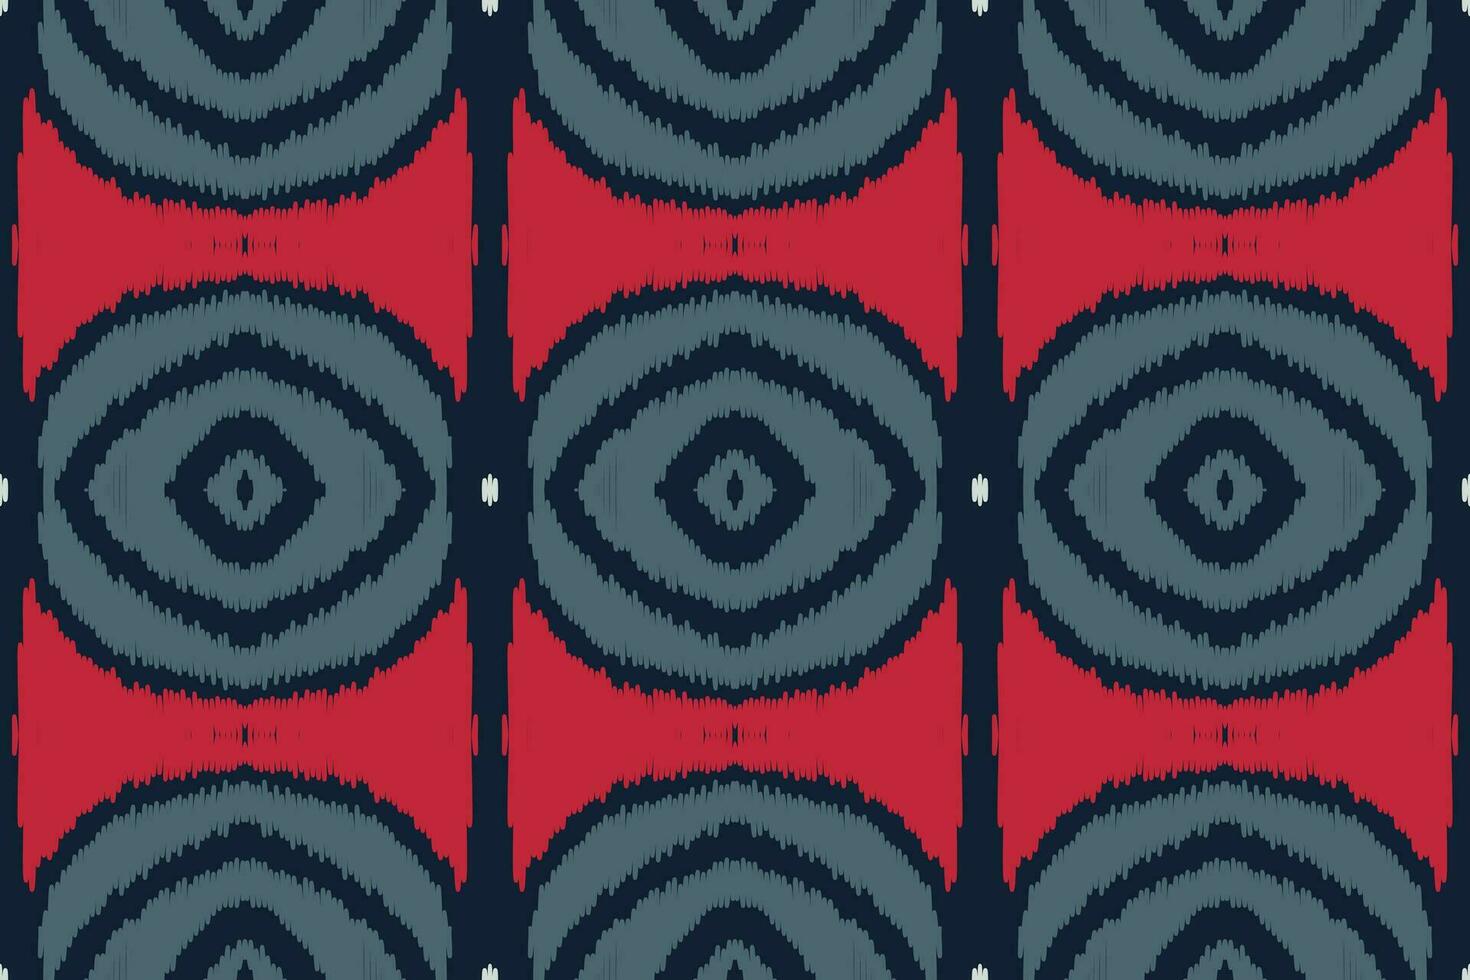 motief ikat naadloos patroon borduurwerk achtergrond. ikat bloem meetkundig etnisch oosters patroon traditioneel. ikat aztec stijl abstract ontwerp voor afdrukken textuur,stof,sari,sari,tapijt. vector